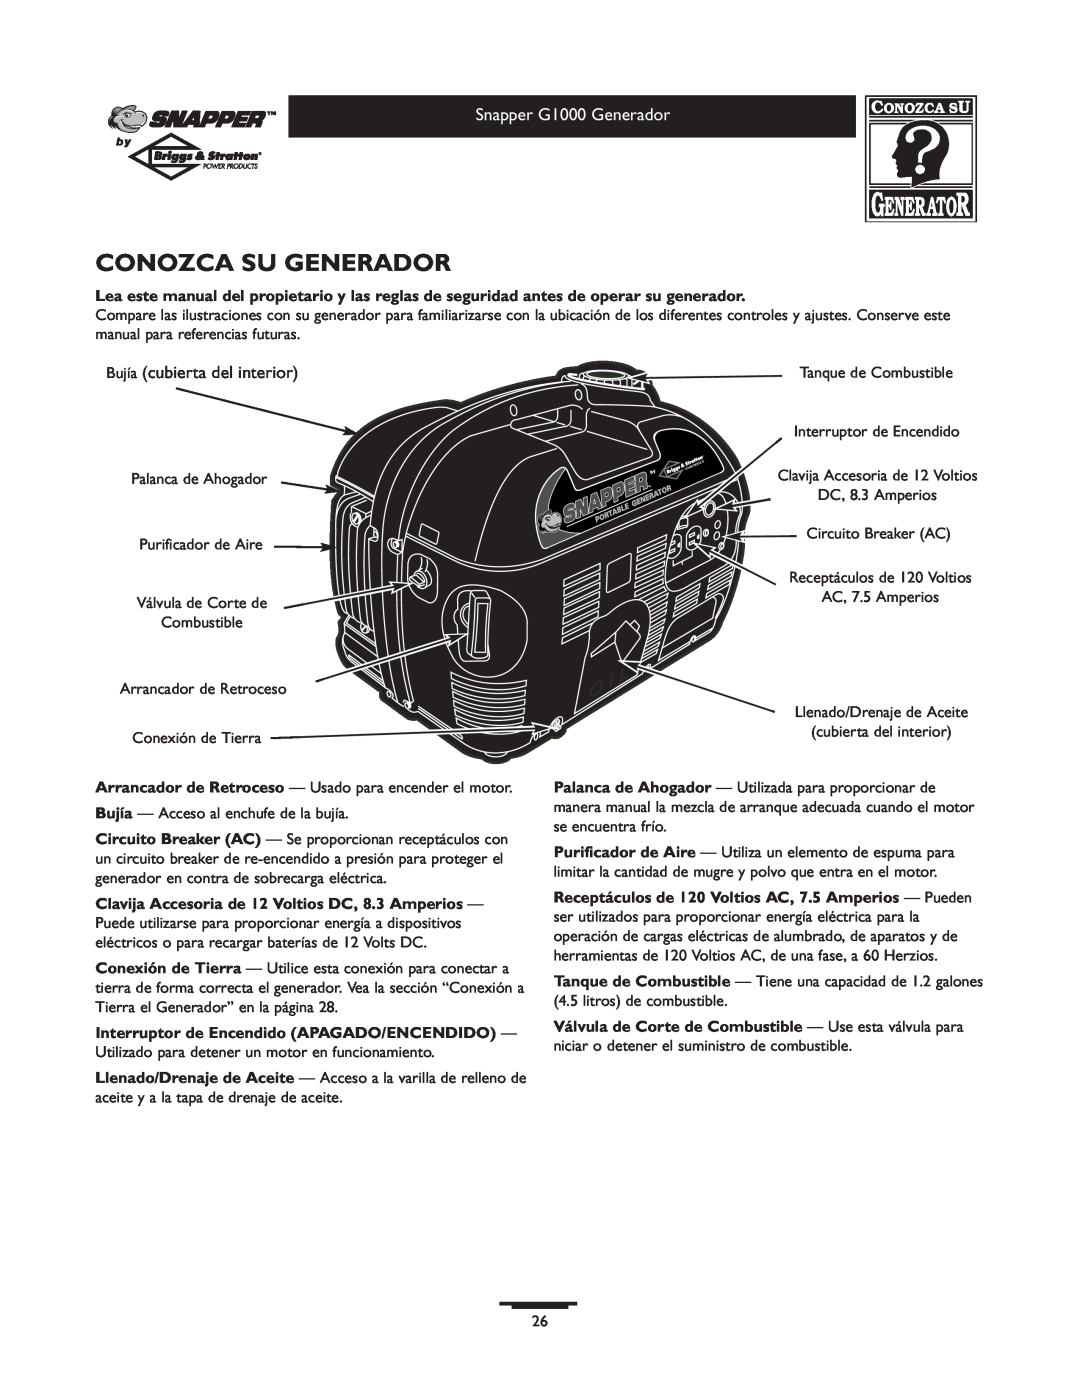 Snapper 1666-0 owner manual Conozca Su Generador, Bujía cubierta del interior 